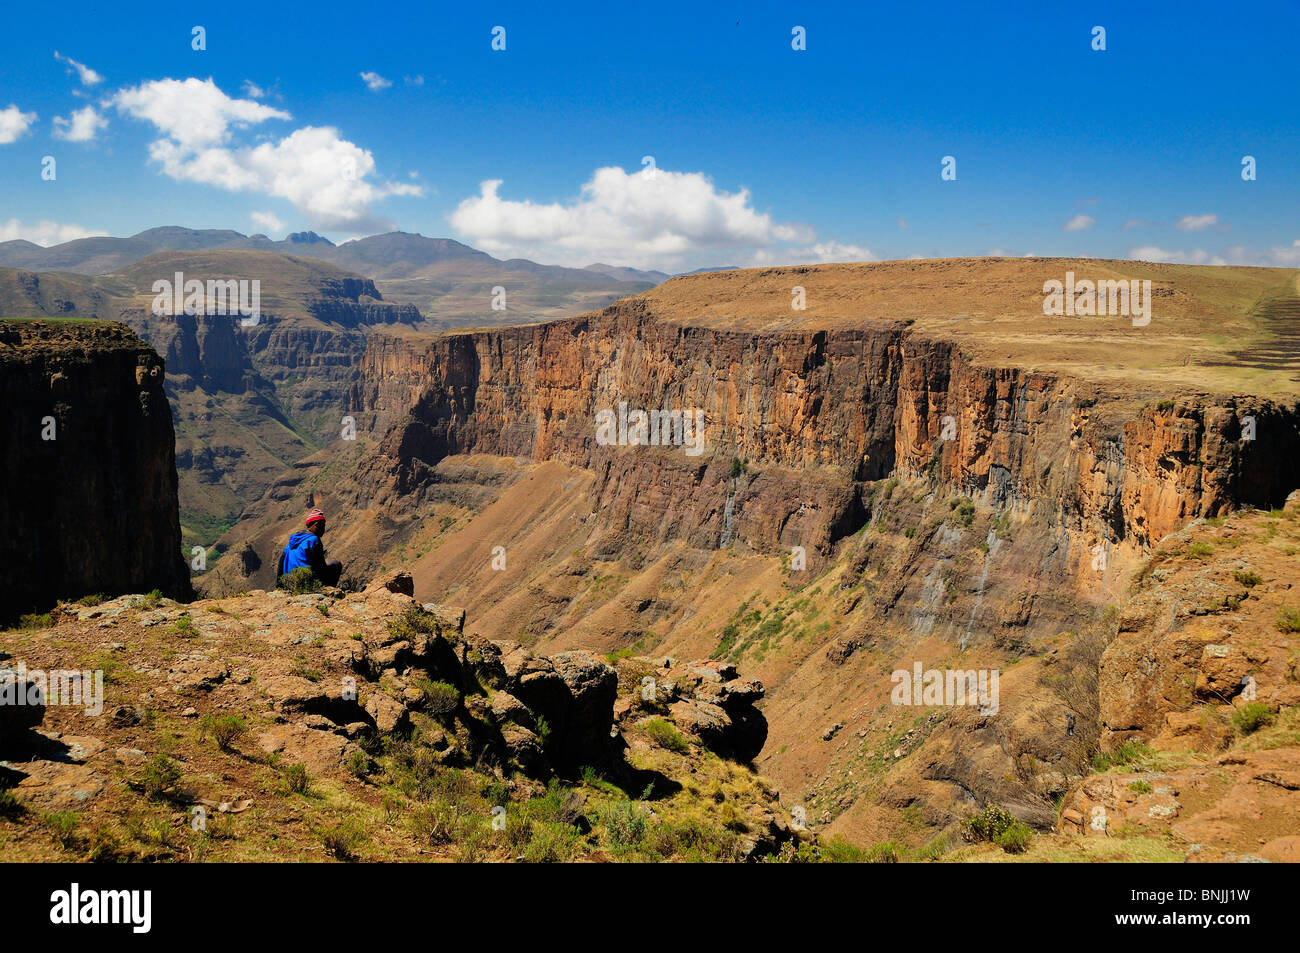 gennemførlig er mere end Vænne sig til near Semonkong Lesotho Southern Africa canyon mountain mountains landscape  scenery nature rocks rock Basotho people shepherd Stock Photo - Alamy